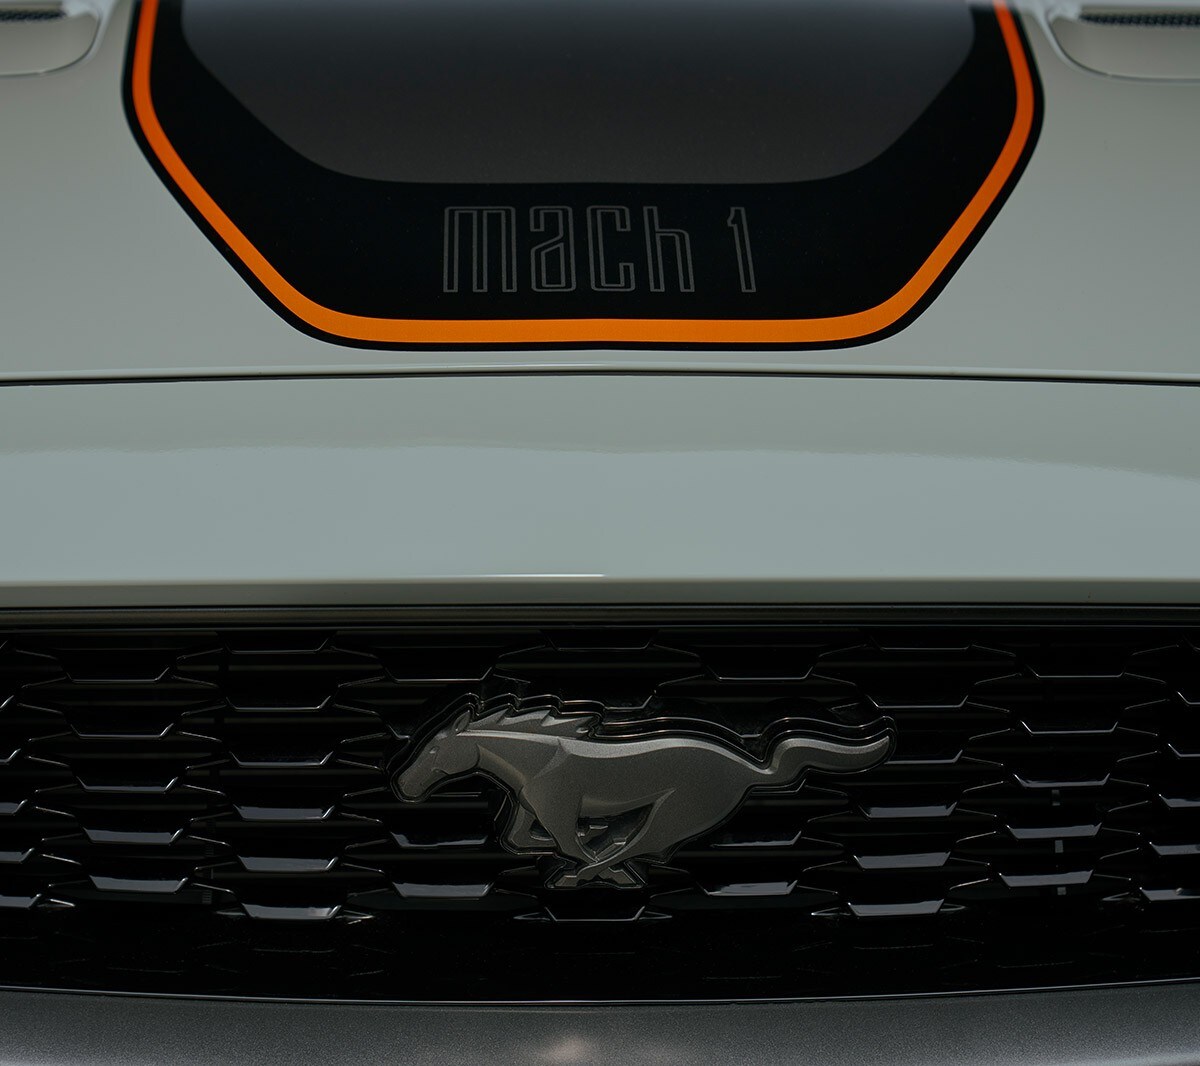 Ford Mustang Mach 1 in Weiß. Detailansicht des Pony-Logos auf dem Kühlergrill